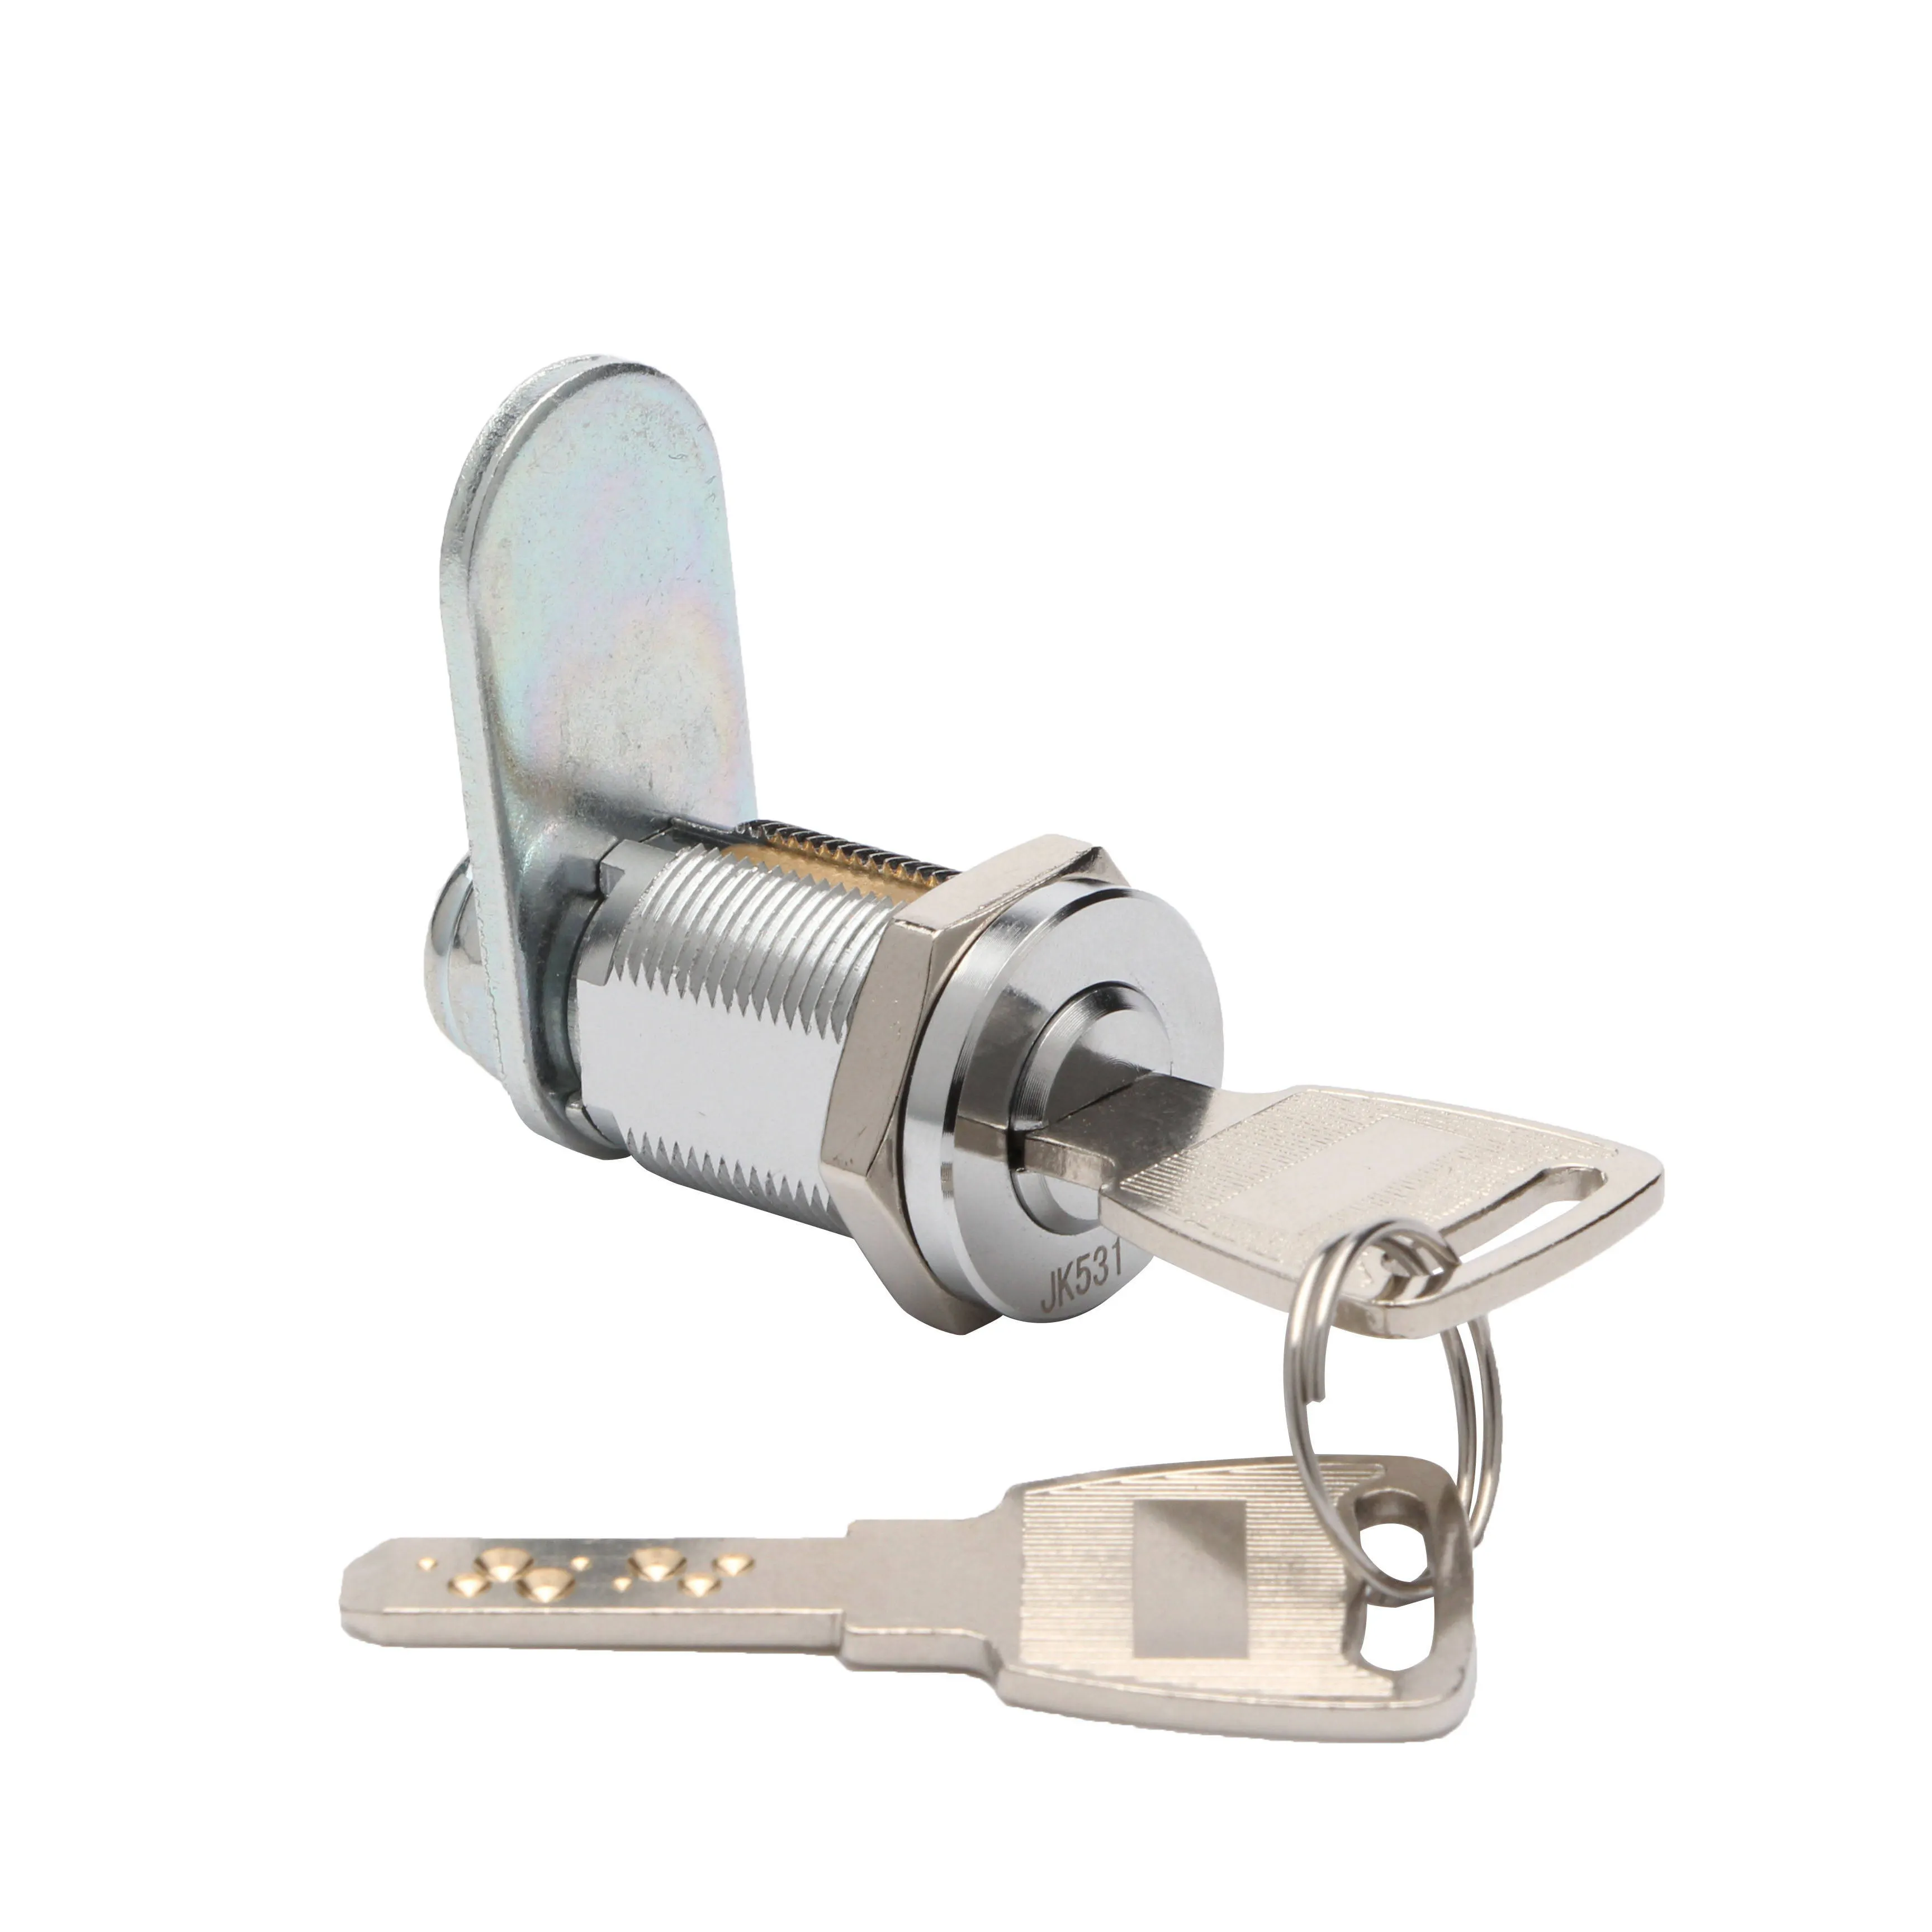 Hight an ninh jk531 cửa xi lanh Tủ dimple key cam khóa máy bán hàng tự động xi lanh khóa